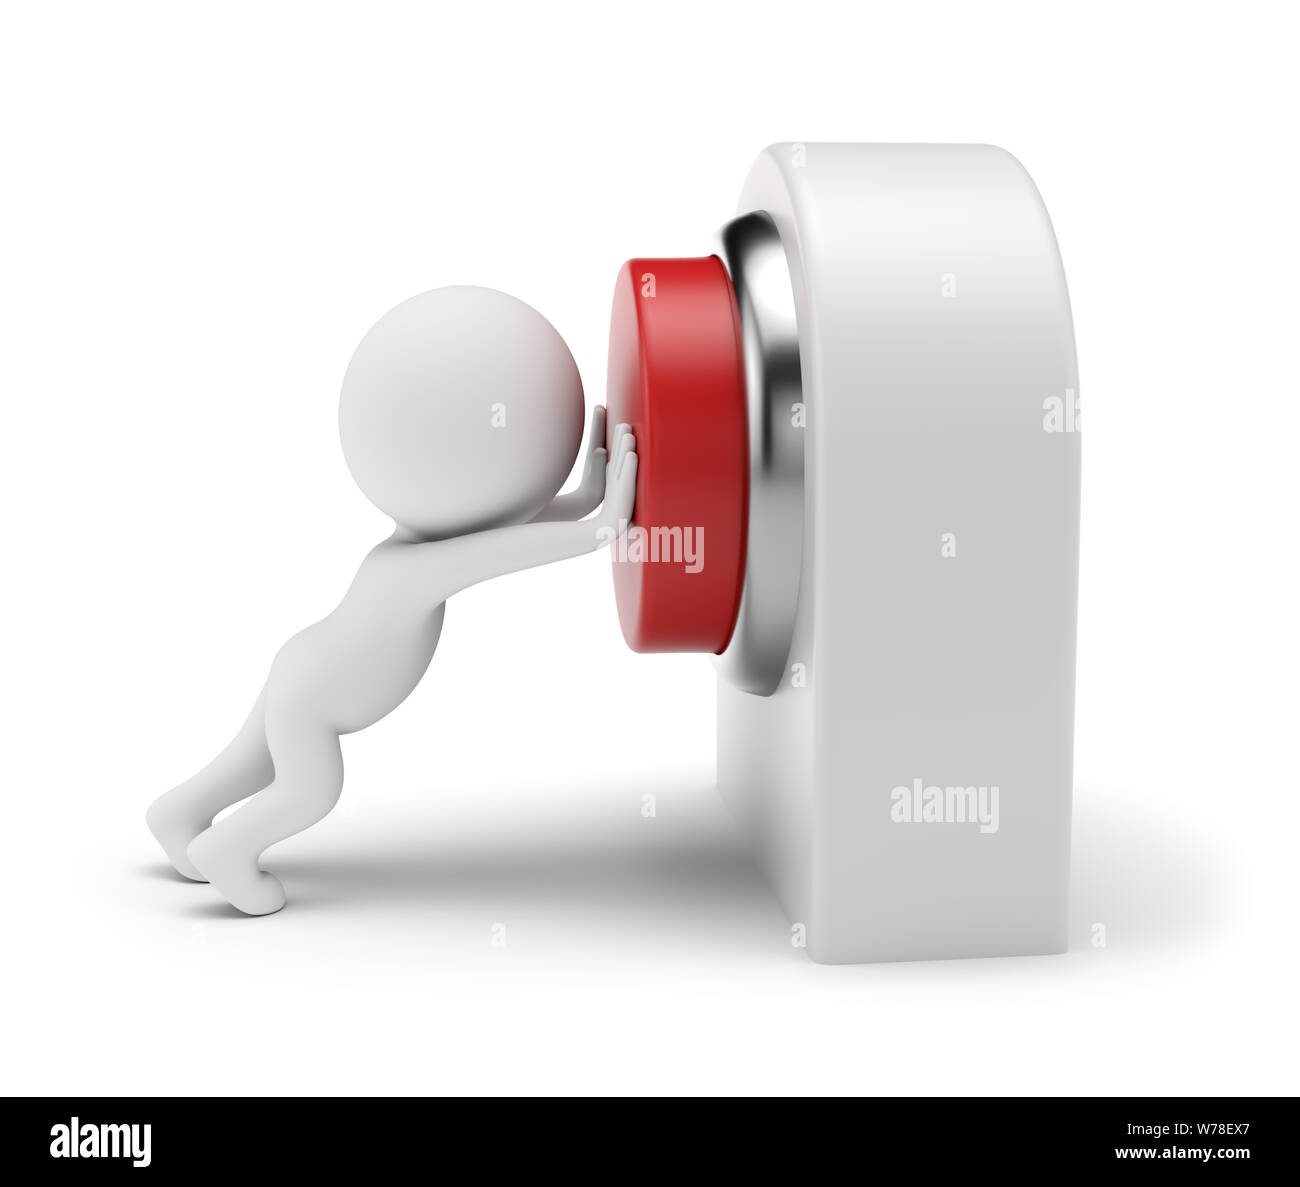 Gente pequeña 3d - presionando el botón rojo en la tarjeta de control. 3D rendering. Aislado sobre fondo blanco. Foto de stock